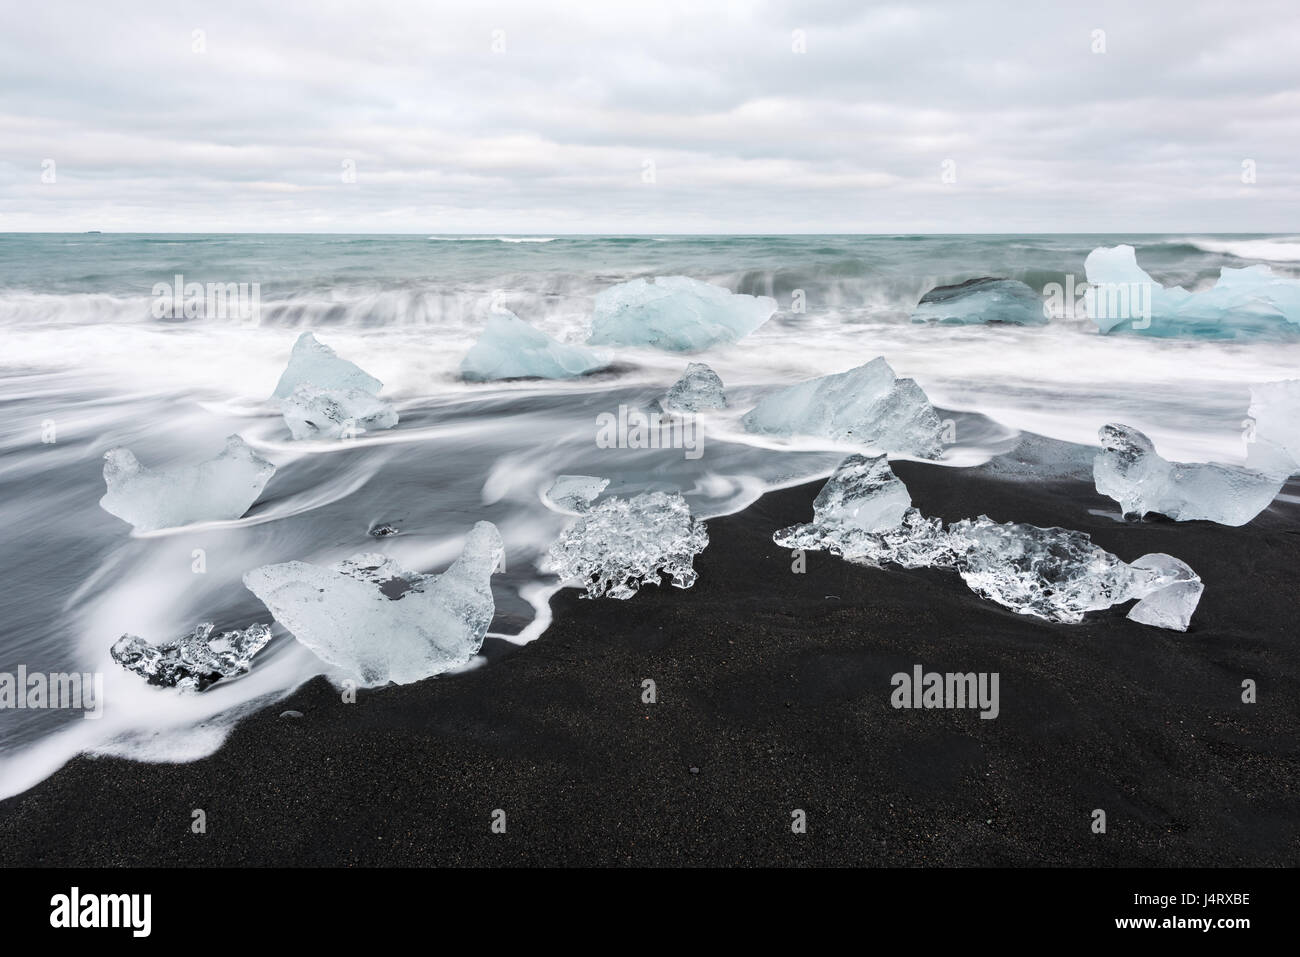 Iceberg pieces on Diamond beach, near Jokulsarlon lagoon, Iceland. Minimalist scene Stock Photo